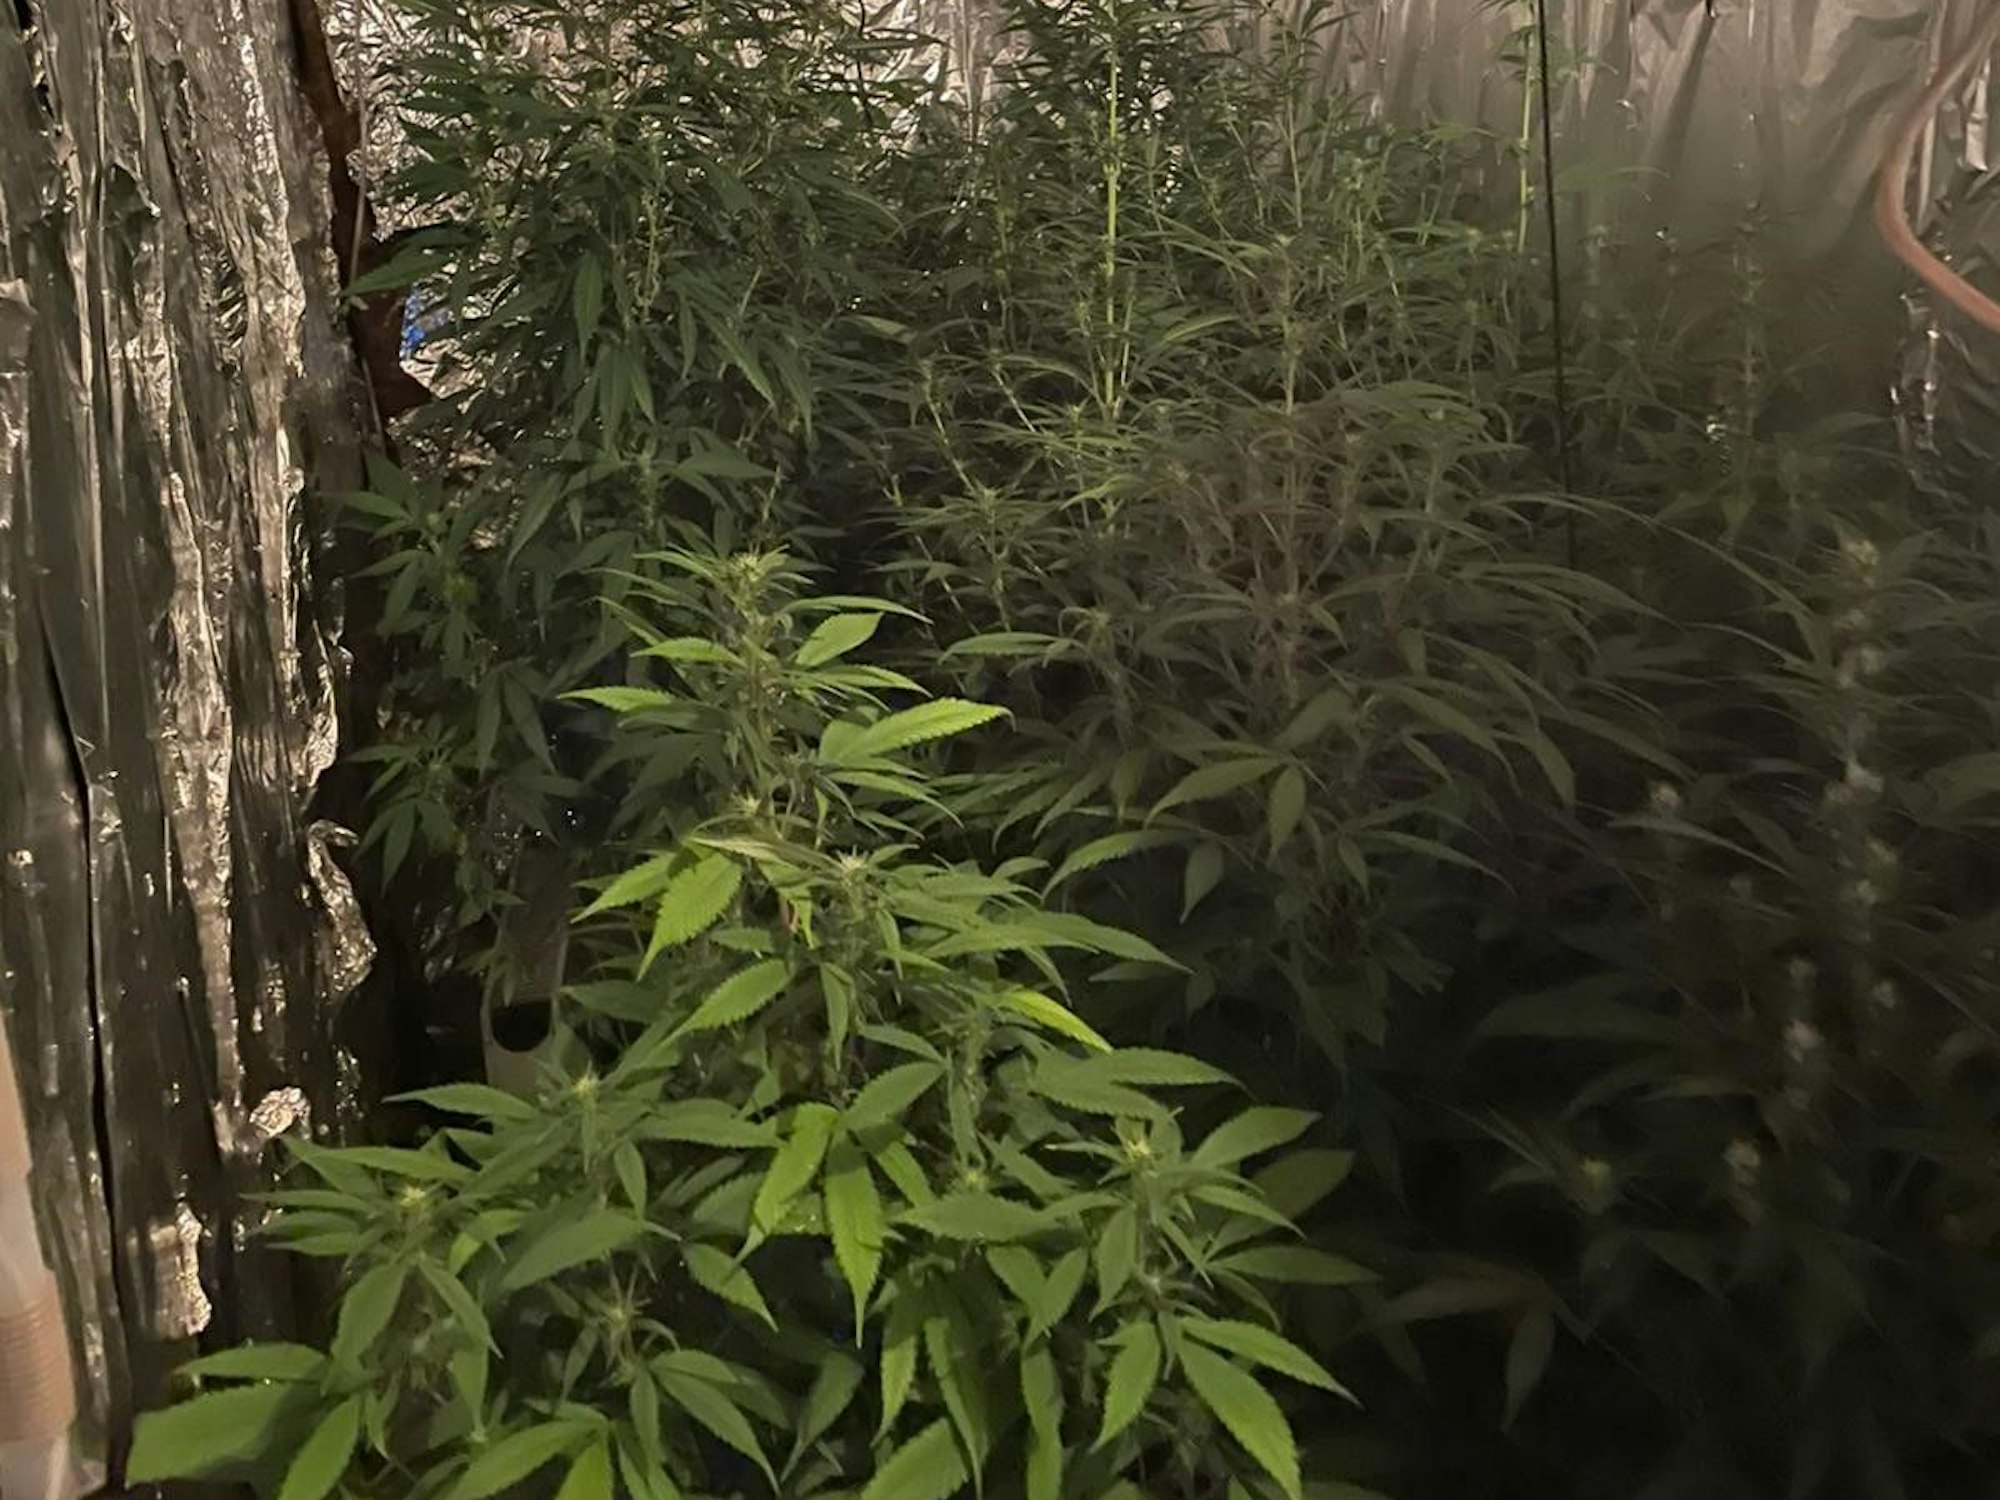 Mehrere Marihuana-Pflanzen stehen dicht gedrängt in einem Raum, dessen Wände mit Alufolie verkleidet sind.